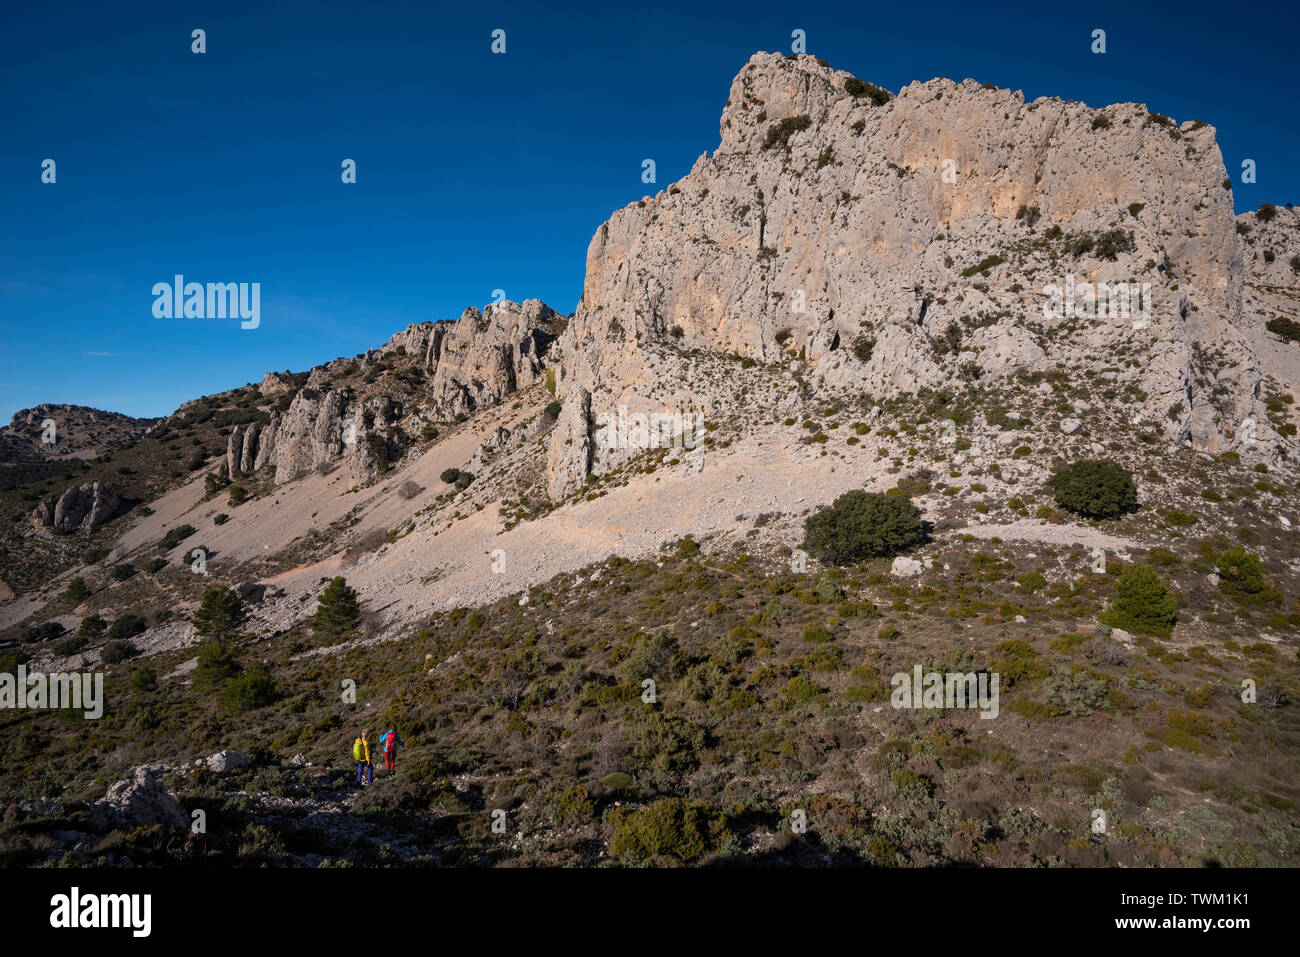 Two women hiking in Sierra de Serrella, Quatretondeta-Confrides, Alicante province, Comunidad Valenciana region, Spain Stock Photo